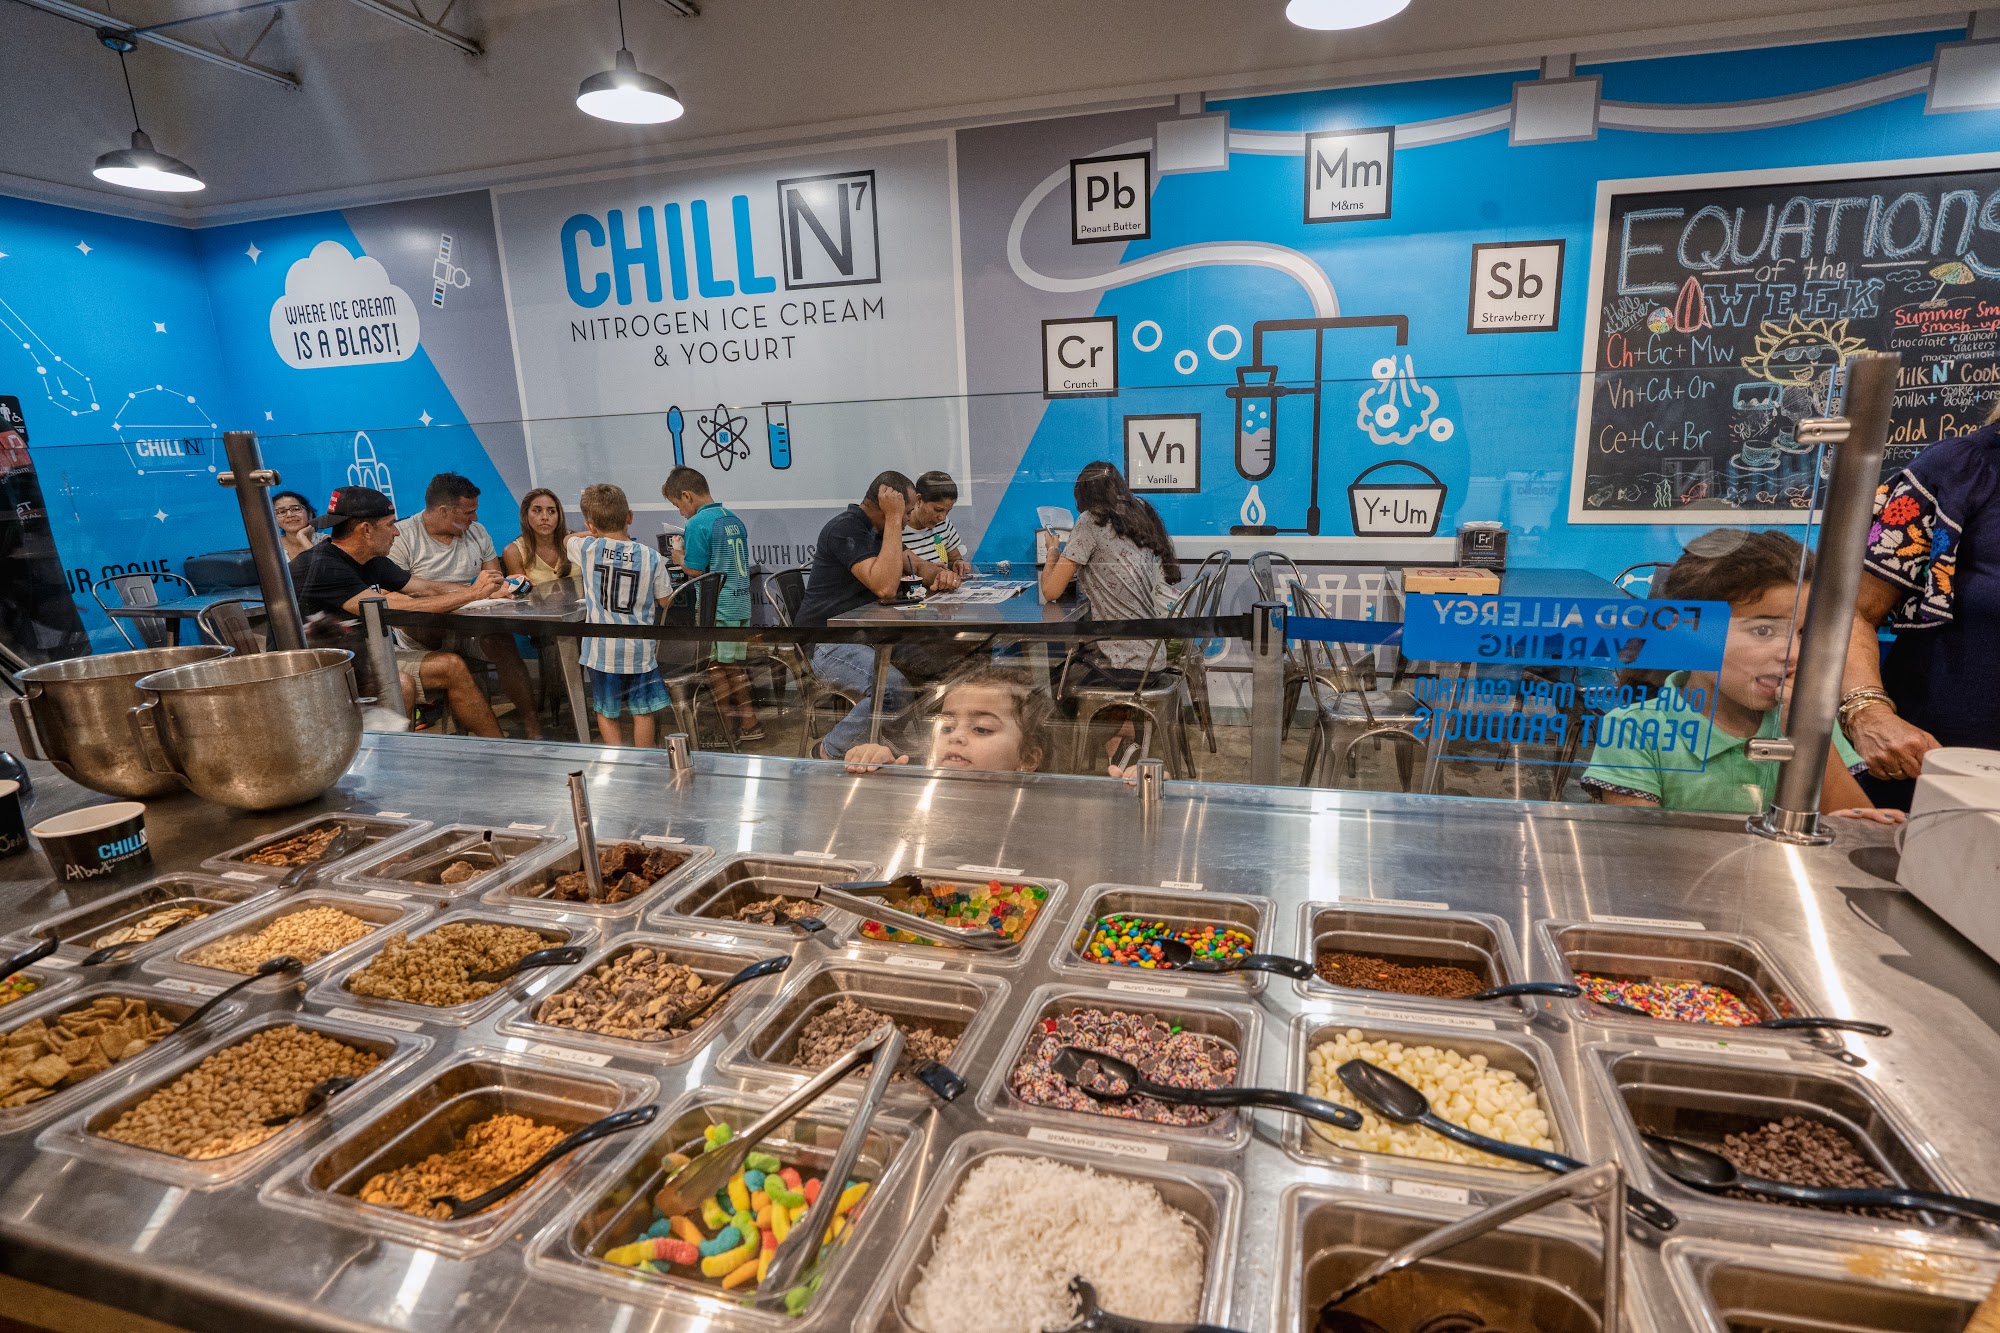 Chill-N Nitrogen Ice Cream South Miami